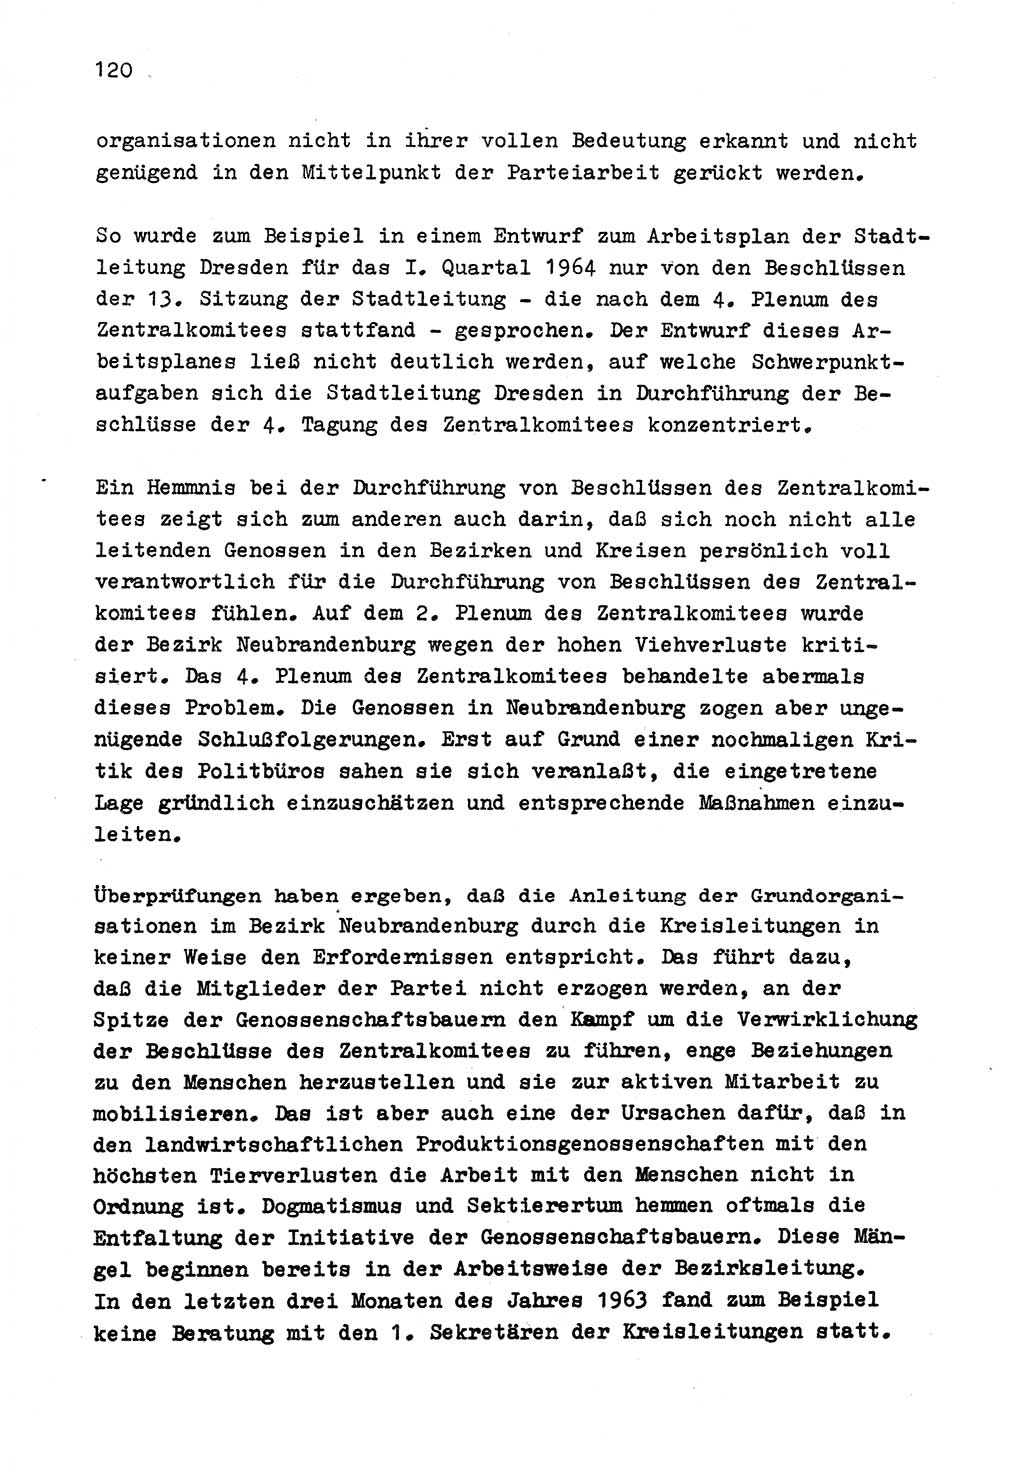 Zu Fragen der Parteiarbeit [Sozialistische Einheitspartei Deutschlands (SED) Deutsche Demokratische Republik (DDR)] 1979, Seite 120 (Fr. PA SED DDR 1979, S. 120)